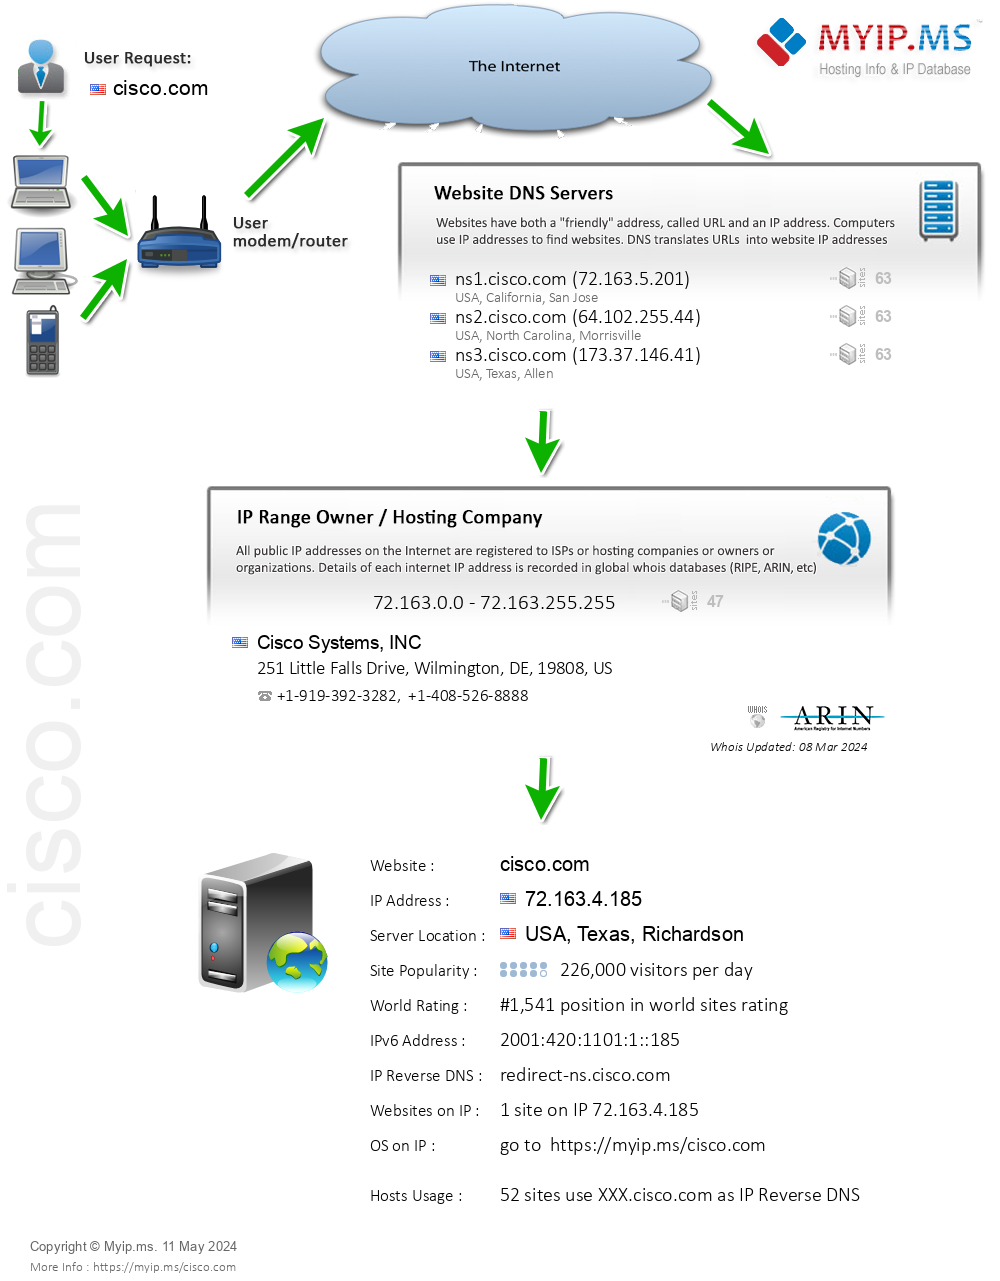 Cisco.com - Website Hosting Visual IP Diagram